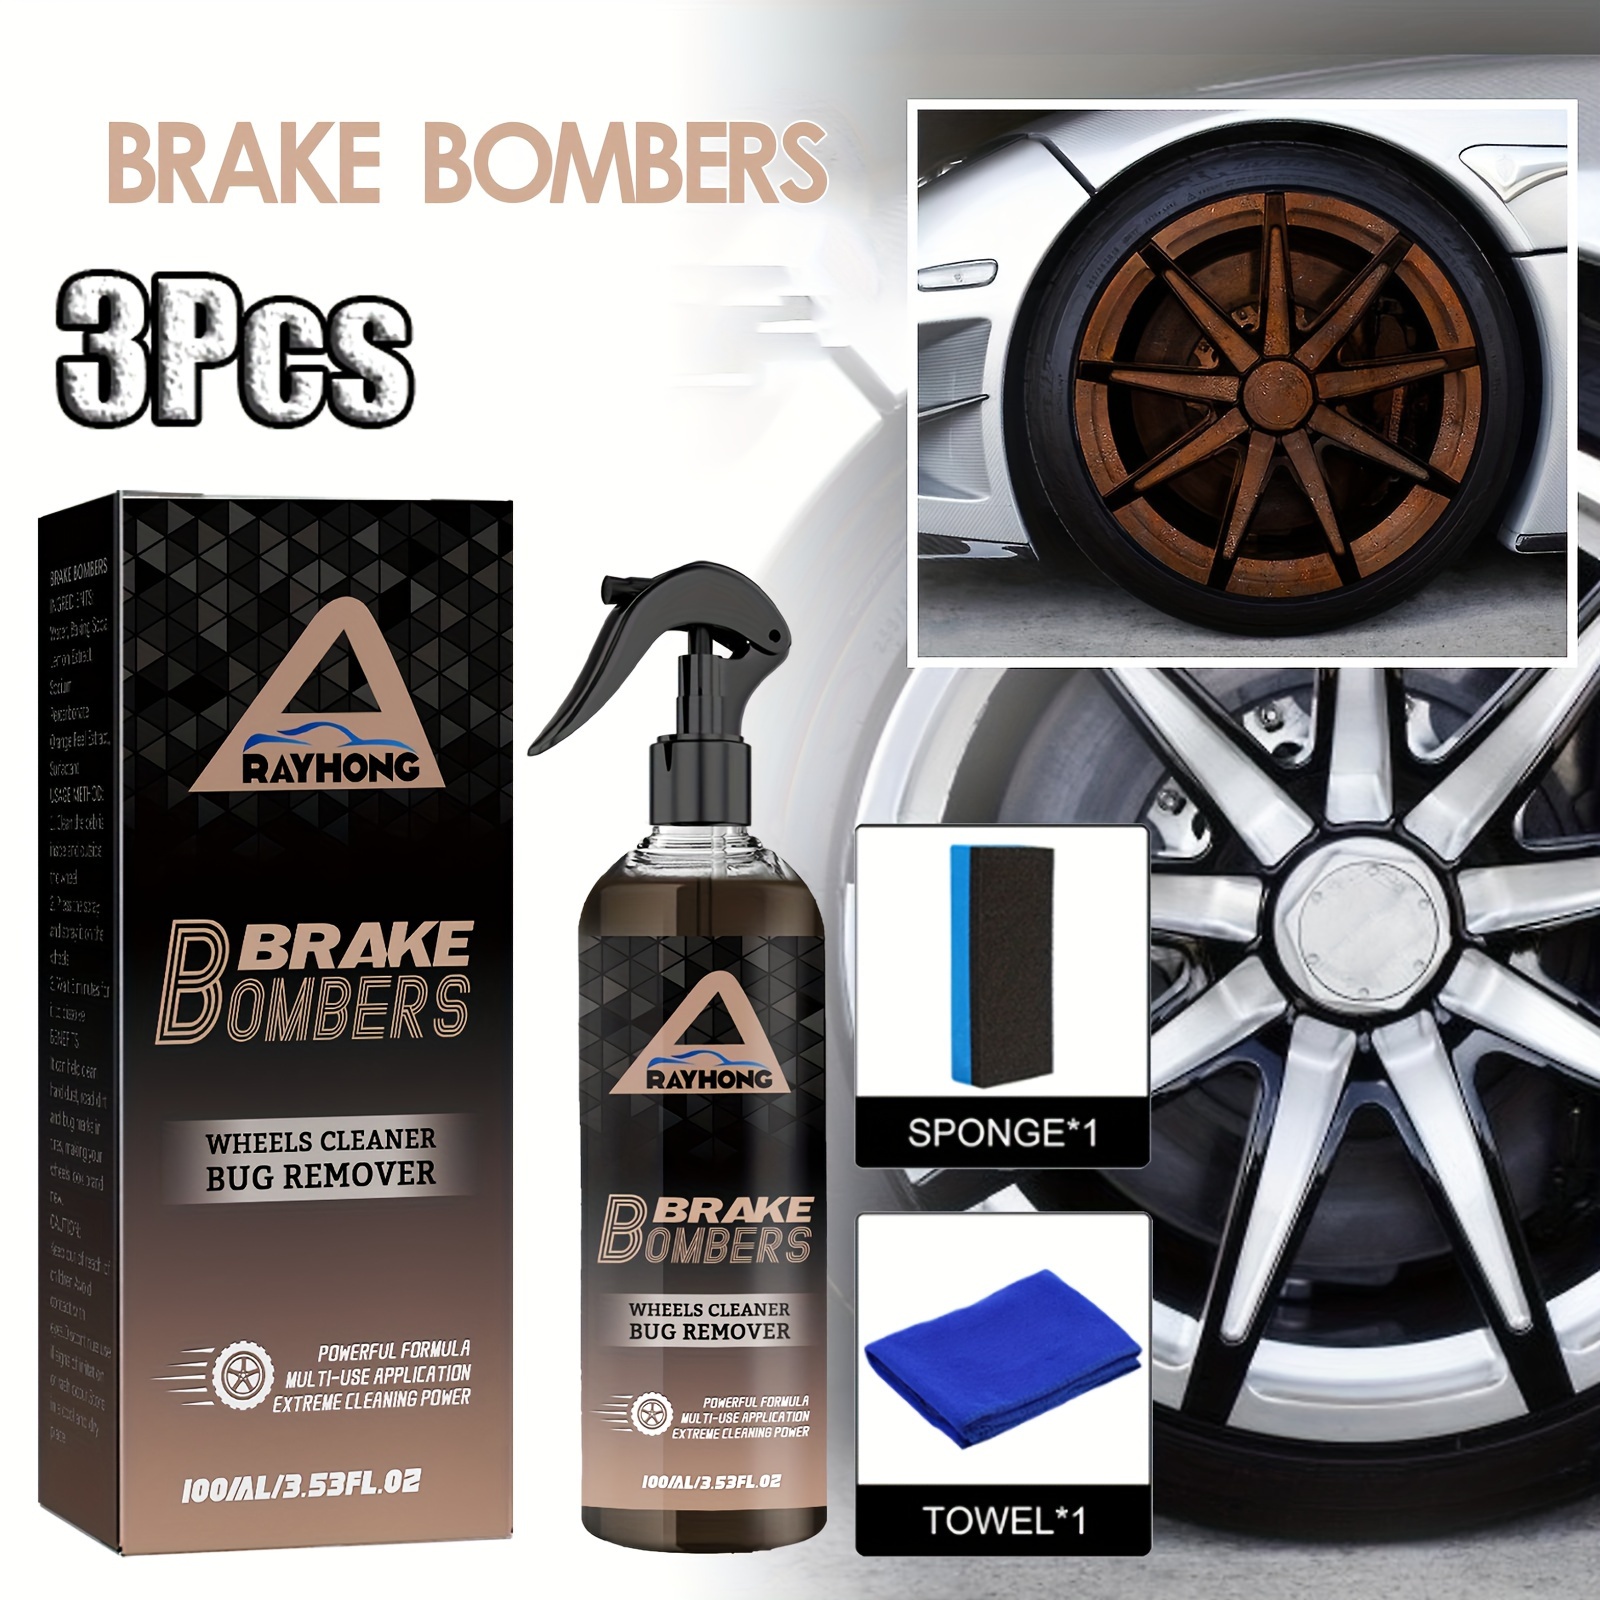 DDRPAD Brake Bomber Wheel Cleaner and Bug Remover, Stealth Brake Bomber  (120ml)